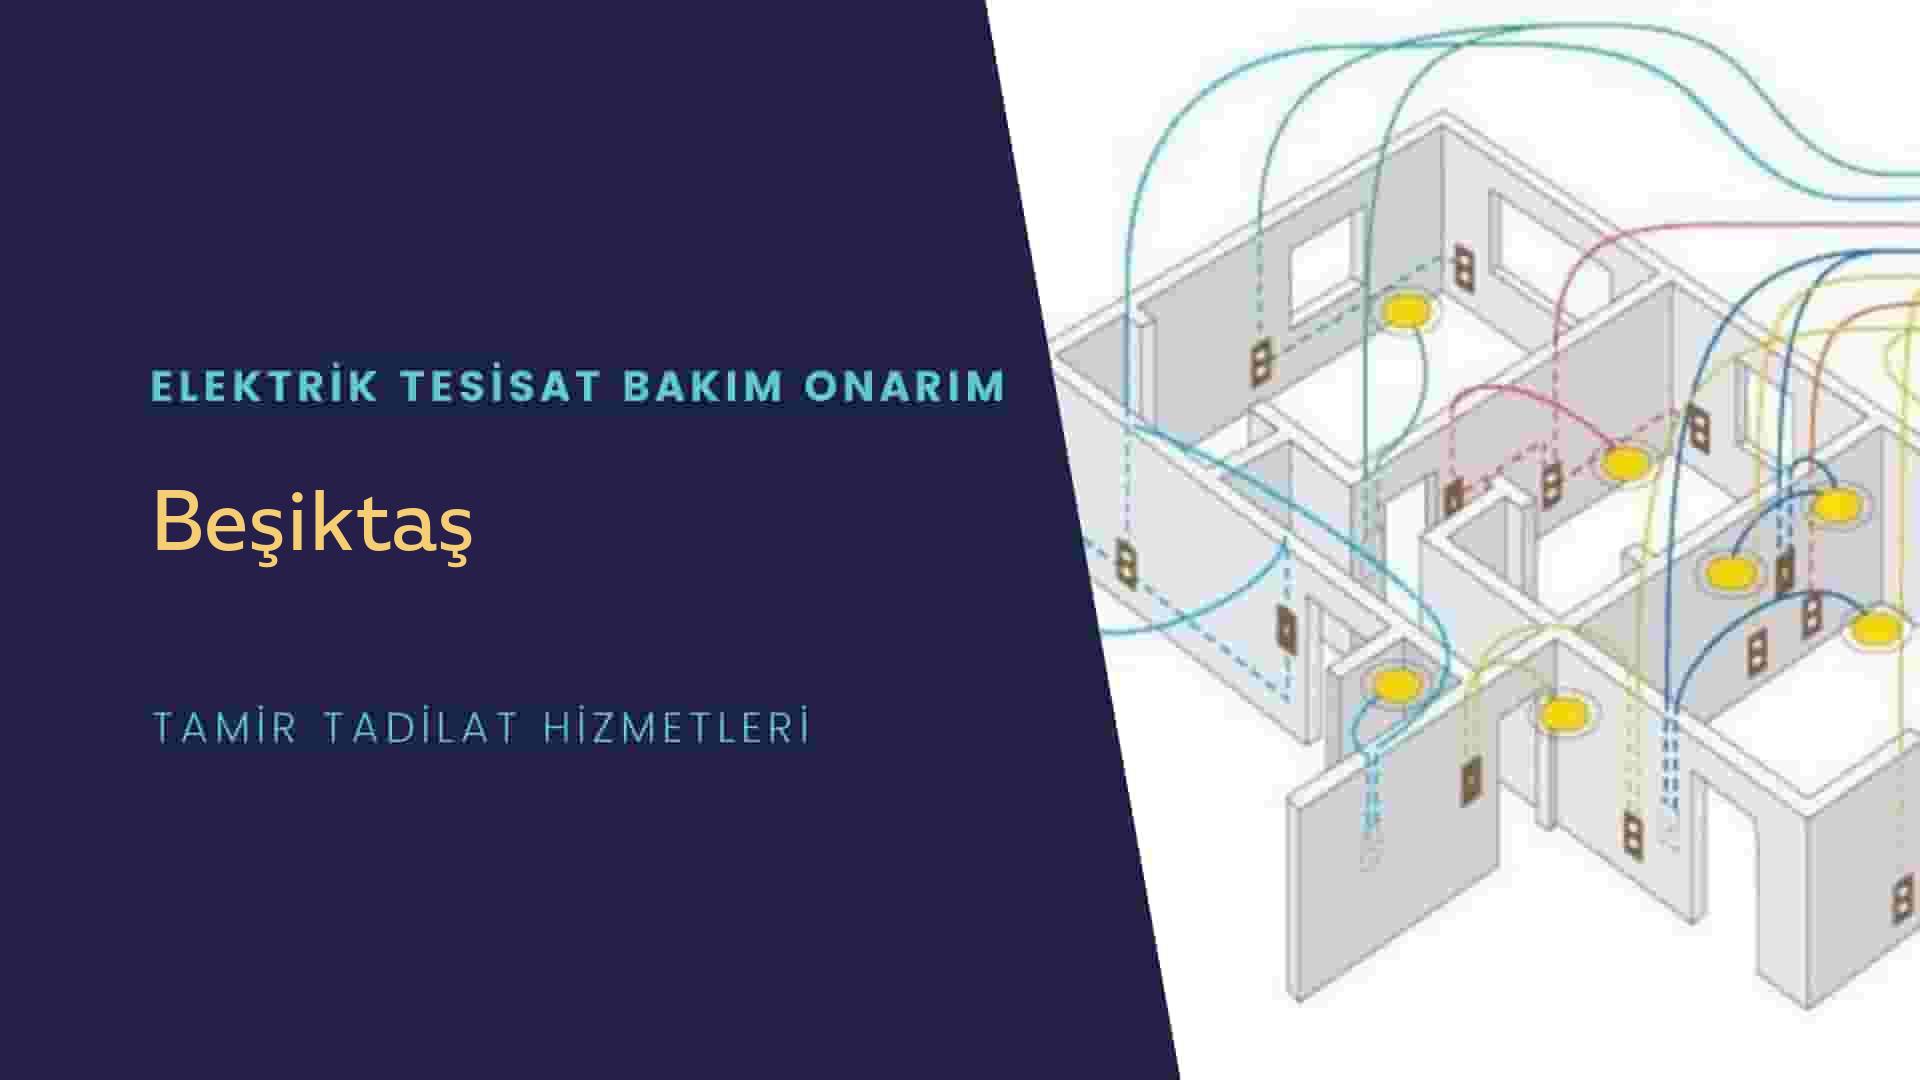 Beşiktaş'ta elektrik tesisatı ustalarımı arıyorsunuz doğru adrestenizi Beşiktaş elektrik tesisatı ustalarımız 7/24 sizlere hizmet vermekten mutluluk duyar.